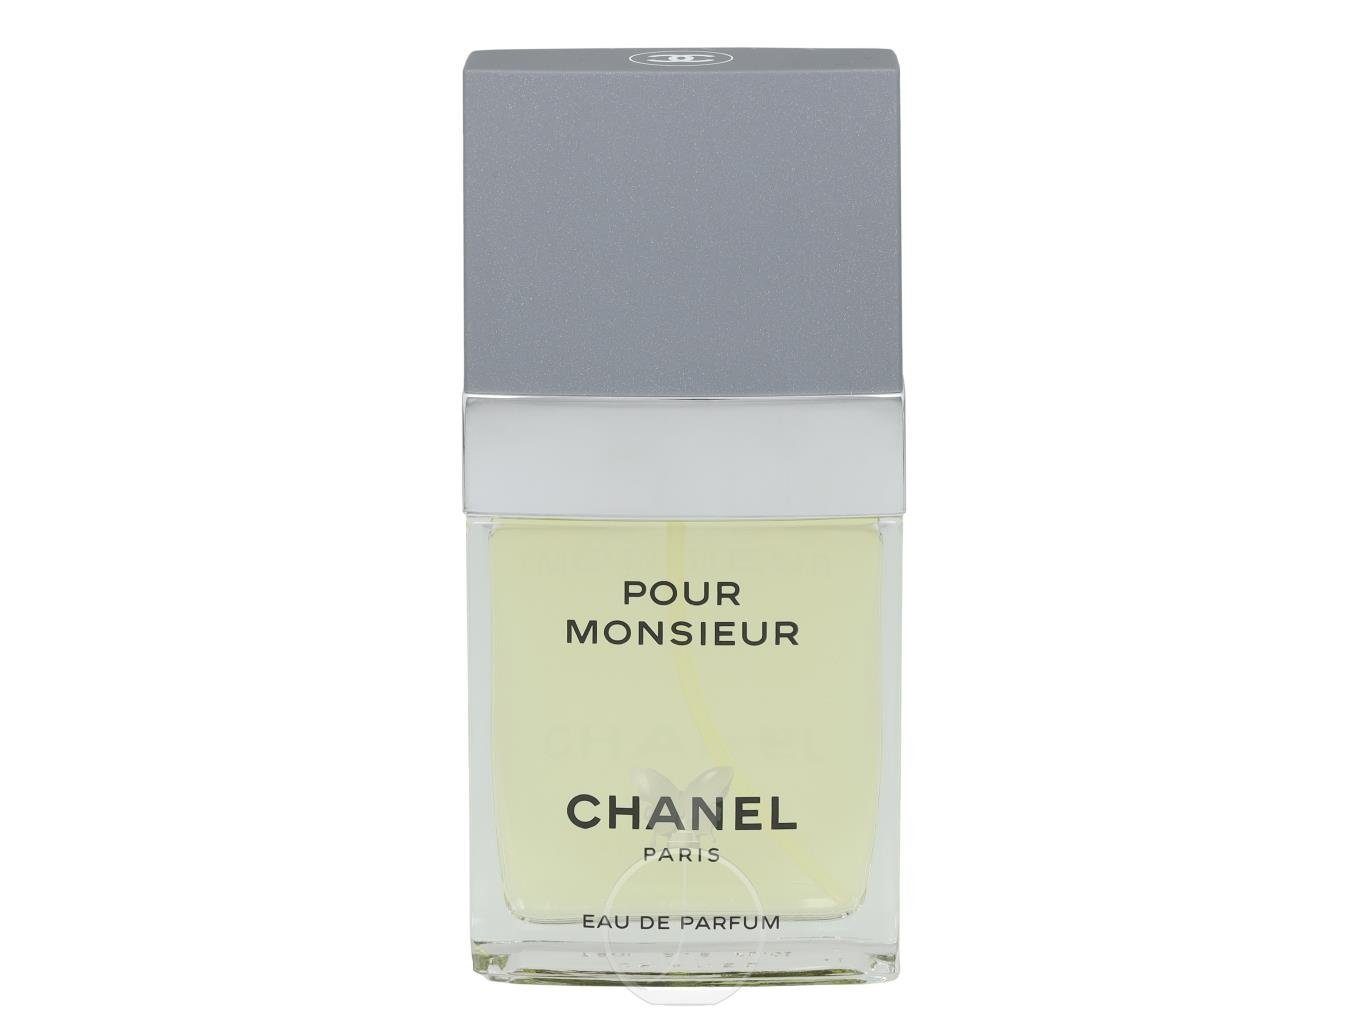 CHANEL Eau de Parfum Chanel Pour Monsieur Eau de Parfum 75 ml